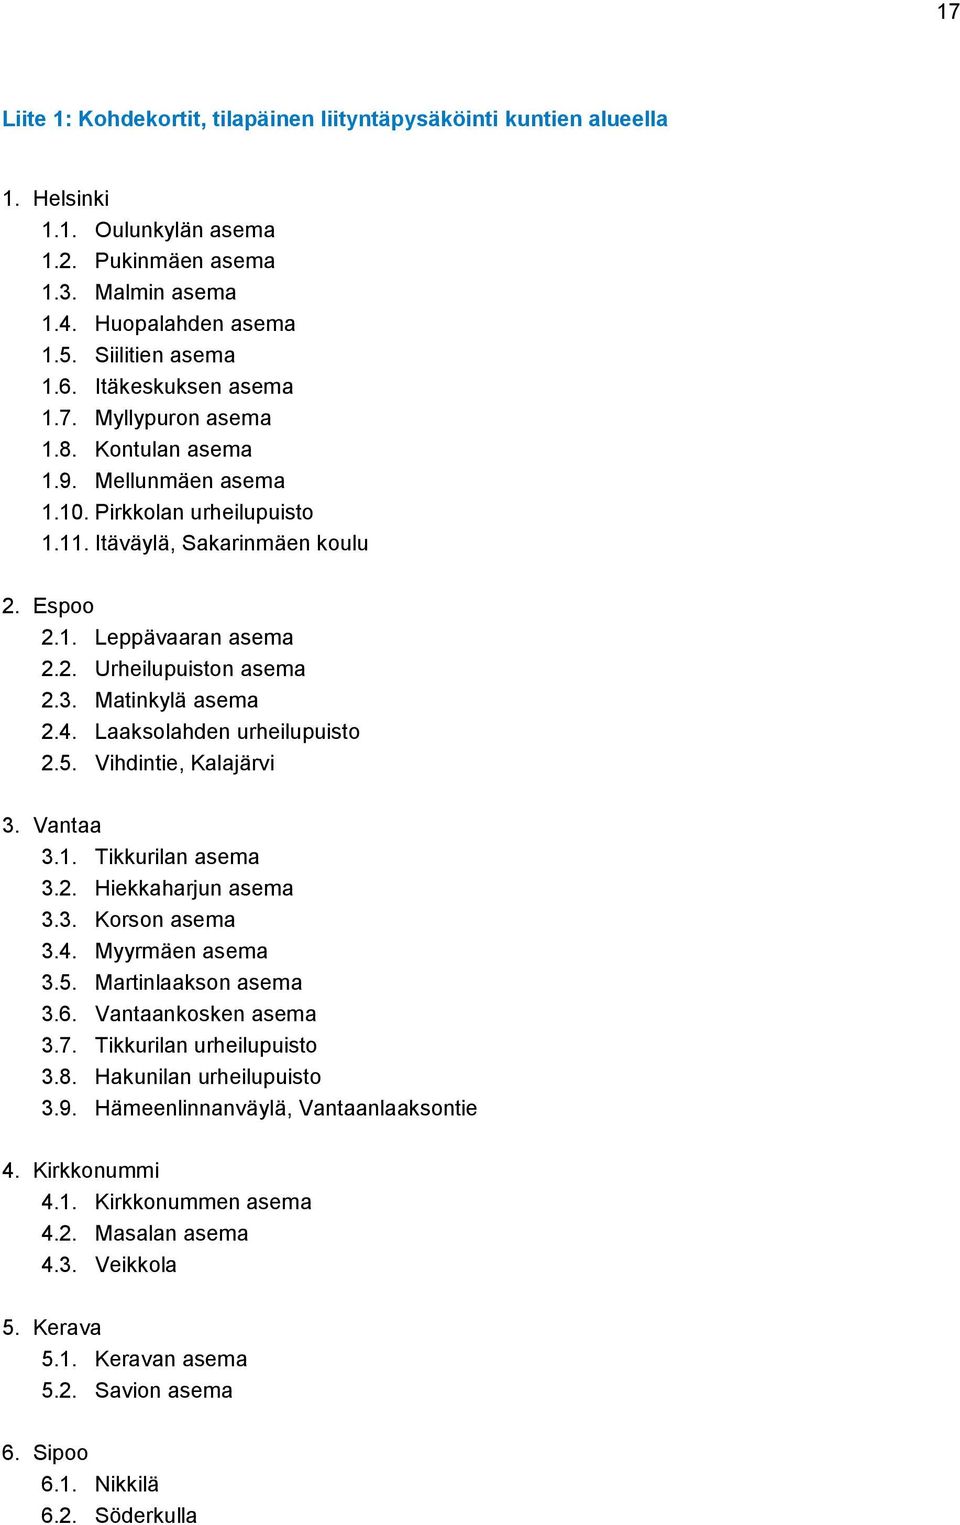 3. Matinkylä asema 2.4. Laaksolahden urheilupuisto 2.5. Vihdintie, Kalajärvi 3. Vantaa 3.1. Tikkurilan asema 3.2. Hiekkaharjun asema 3.3. Korson asema 3.4. Myyrmäen asema 3.5. Martinlaakson asema 3.6.